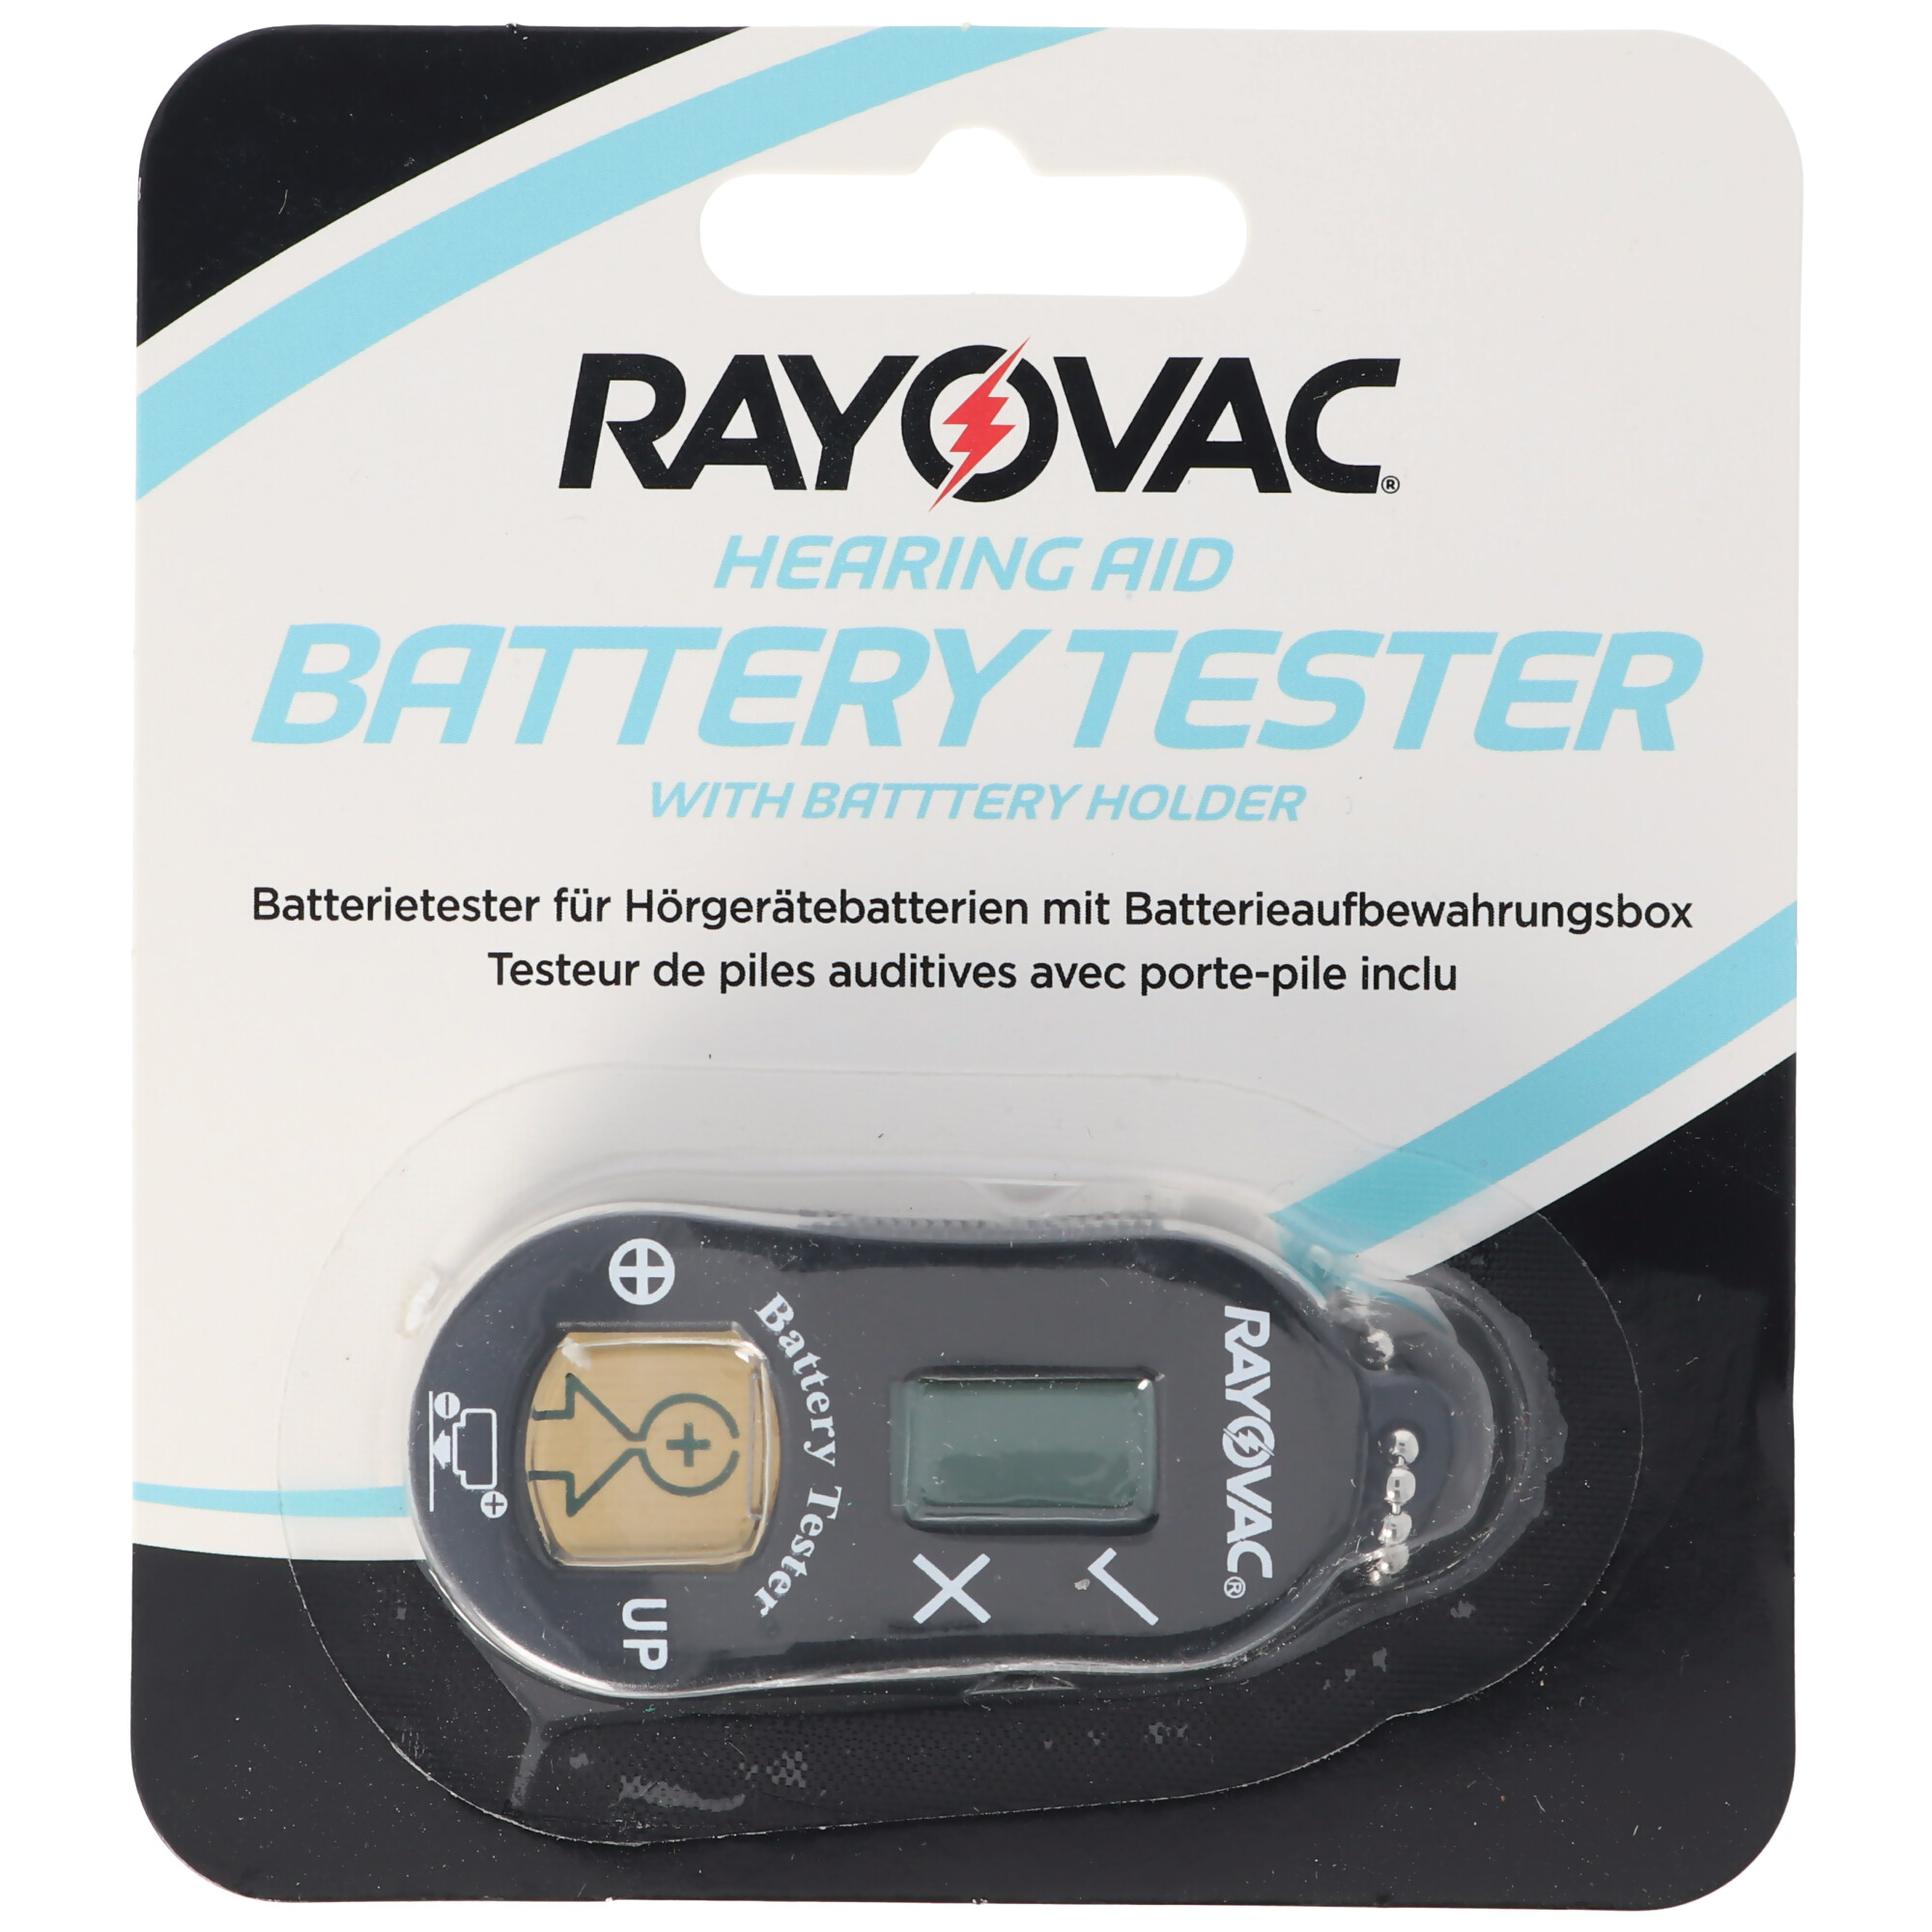 Batterietester für Hörgerätebatterien mit Batterieaufbewahrungsbox, prüft alle gängigen Hörgerätebatterien